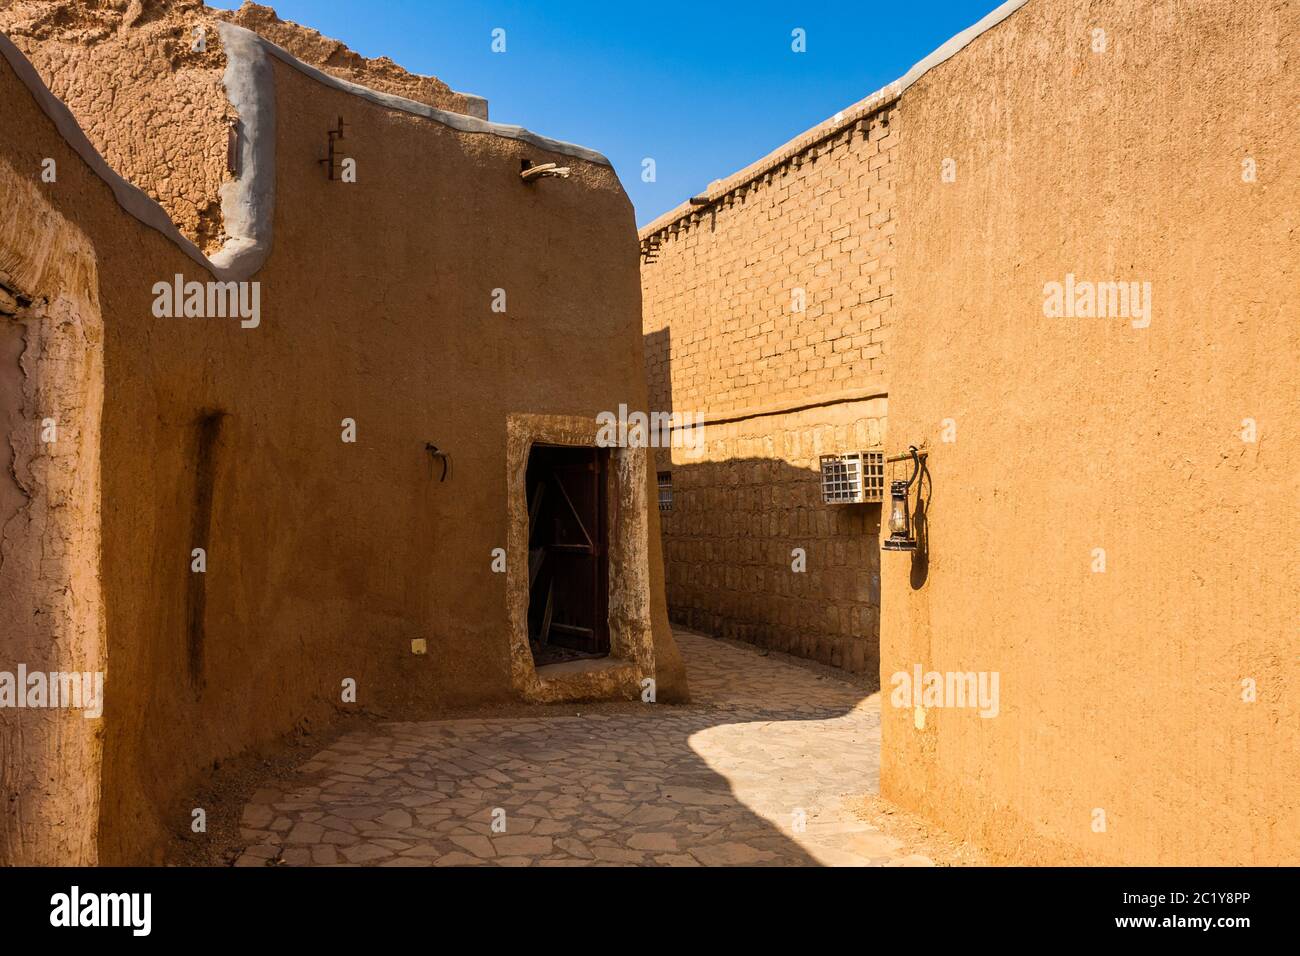 Une rue étroite dans un village arabe traditionnel en brique de boue, Al Majmaah, Arabie Saoudite Banque D'Images